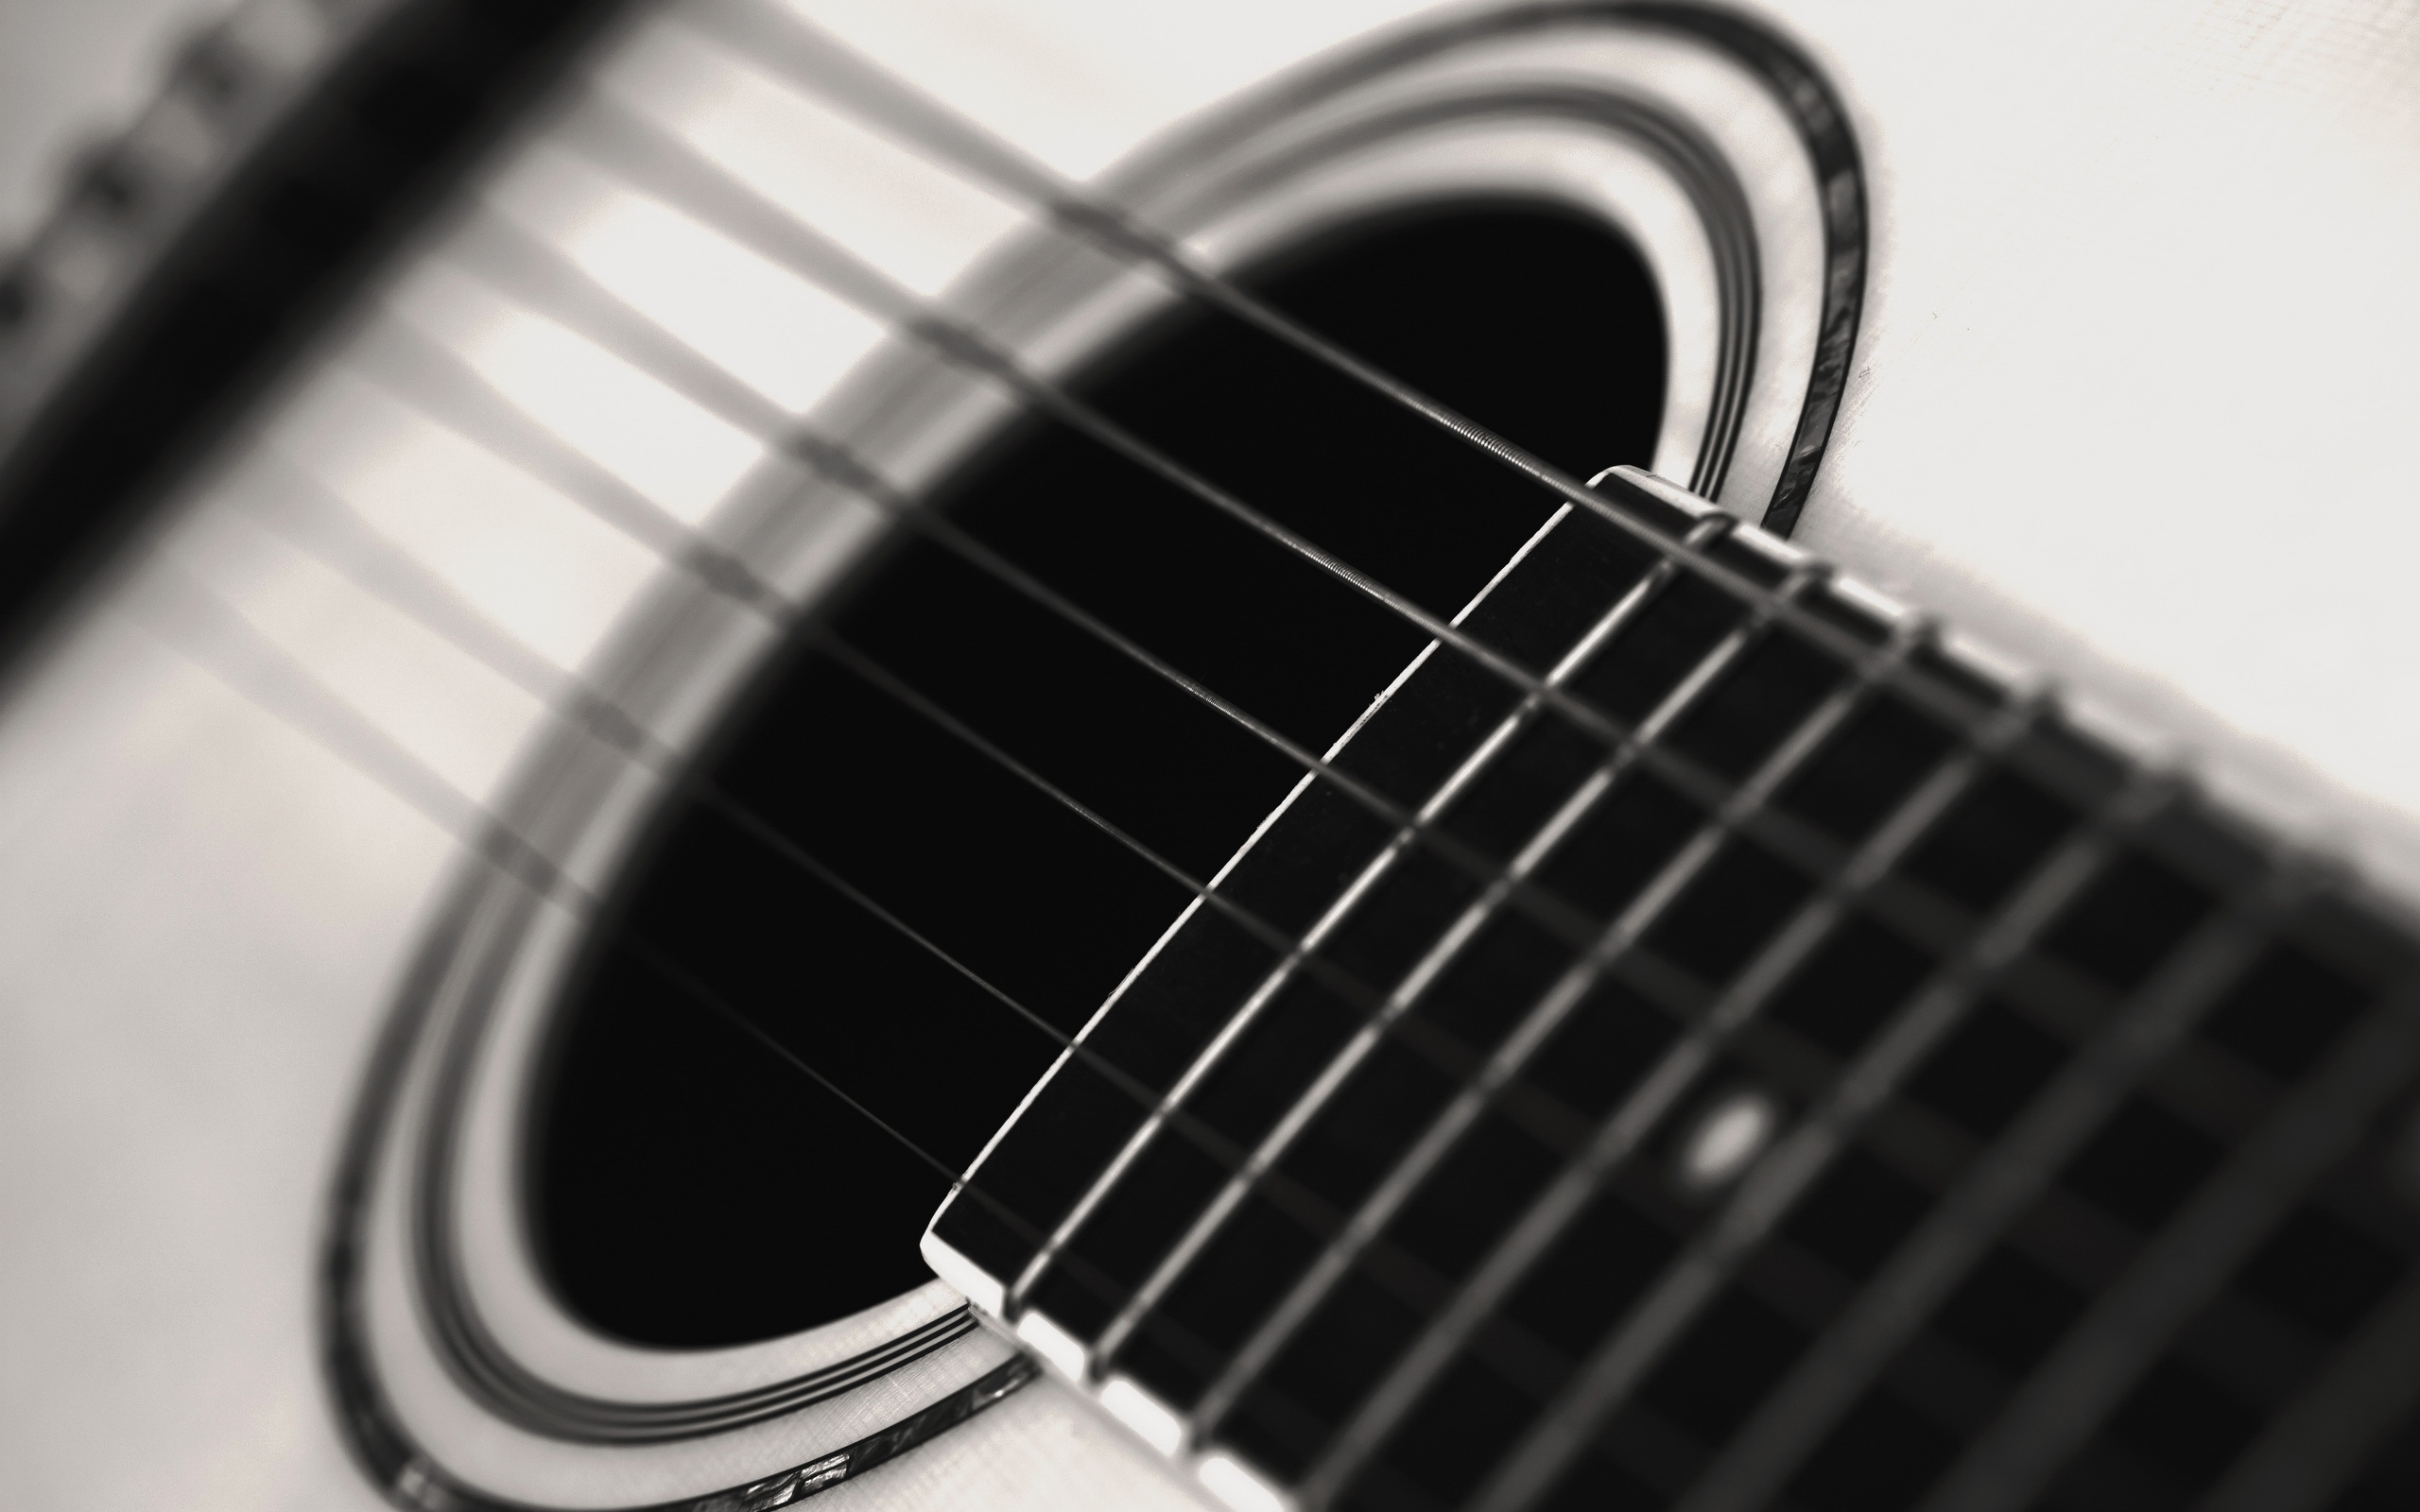 gitarre wallpaper,gitarre,akustische gitarre,gezupfte saiteninstrumente,musikinstrument,saiteninstrument zubehör